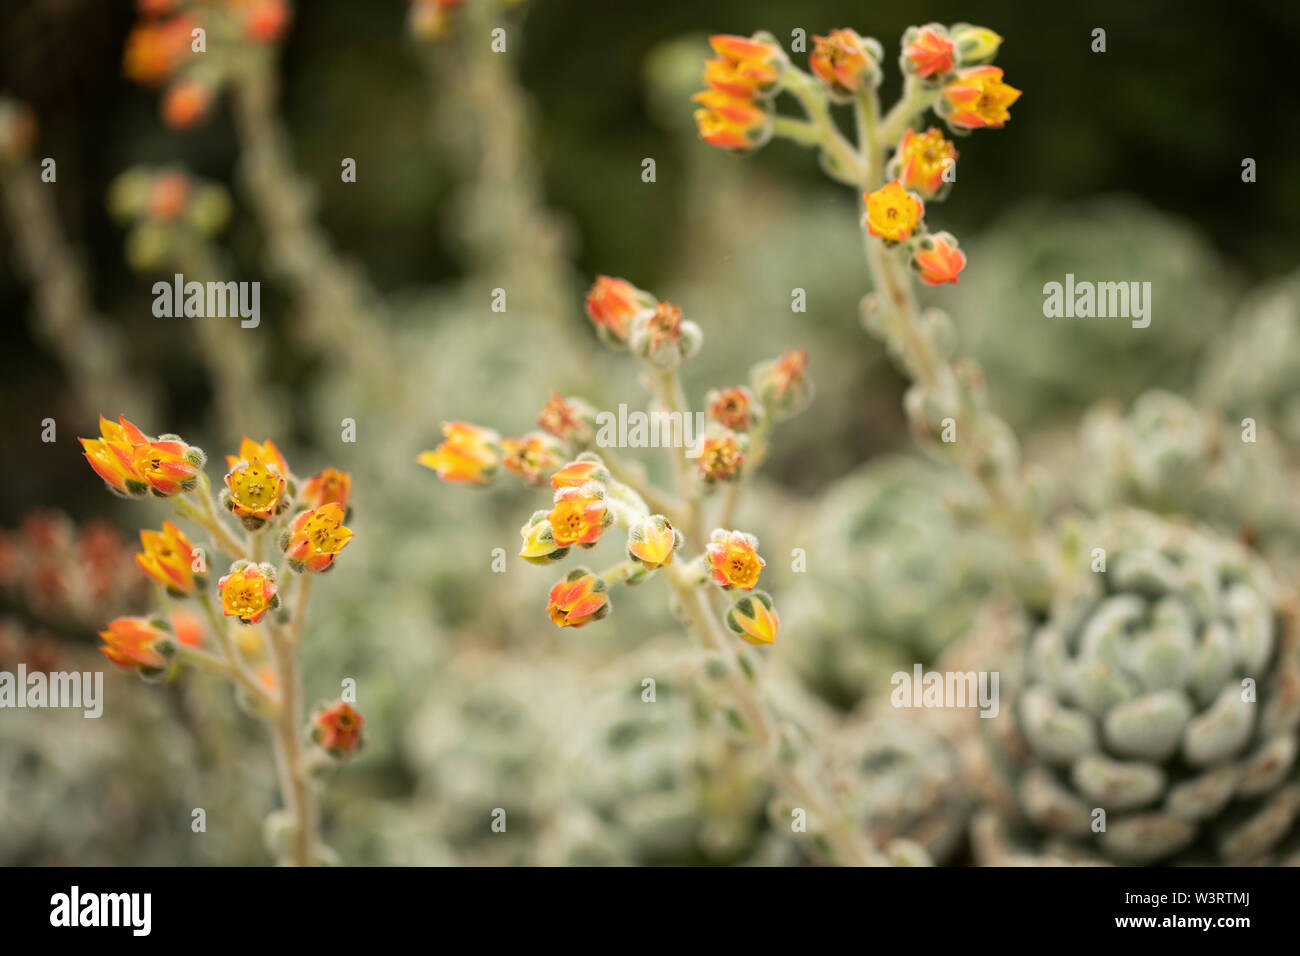 Fleurit sur une plante Echeveria Bombycina, originaire des régions semi-désertiques du Mexique, de l'Amérique centrale et du nord-ouest de l'Amérique du Sud. Banque D'Images